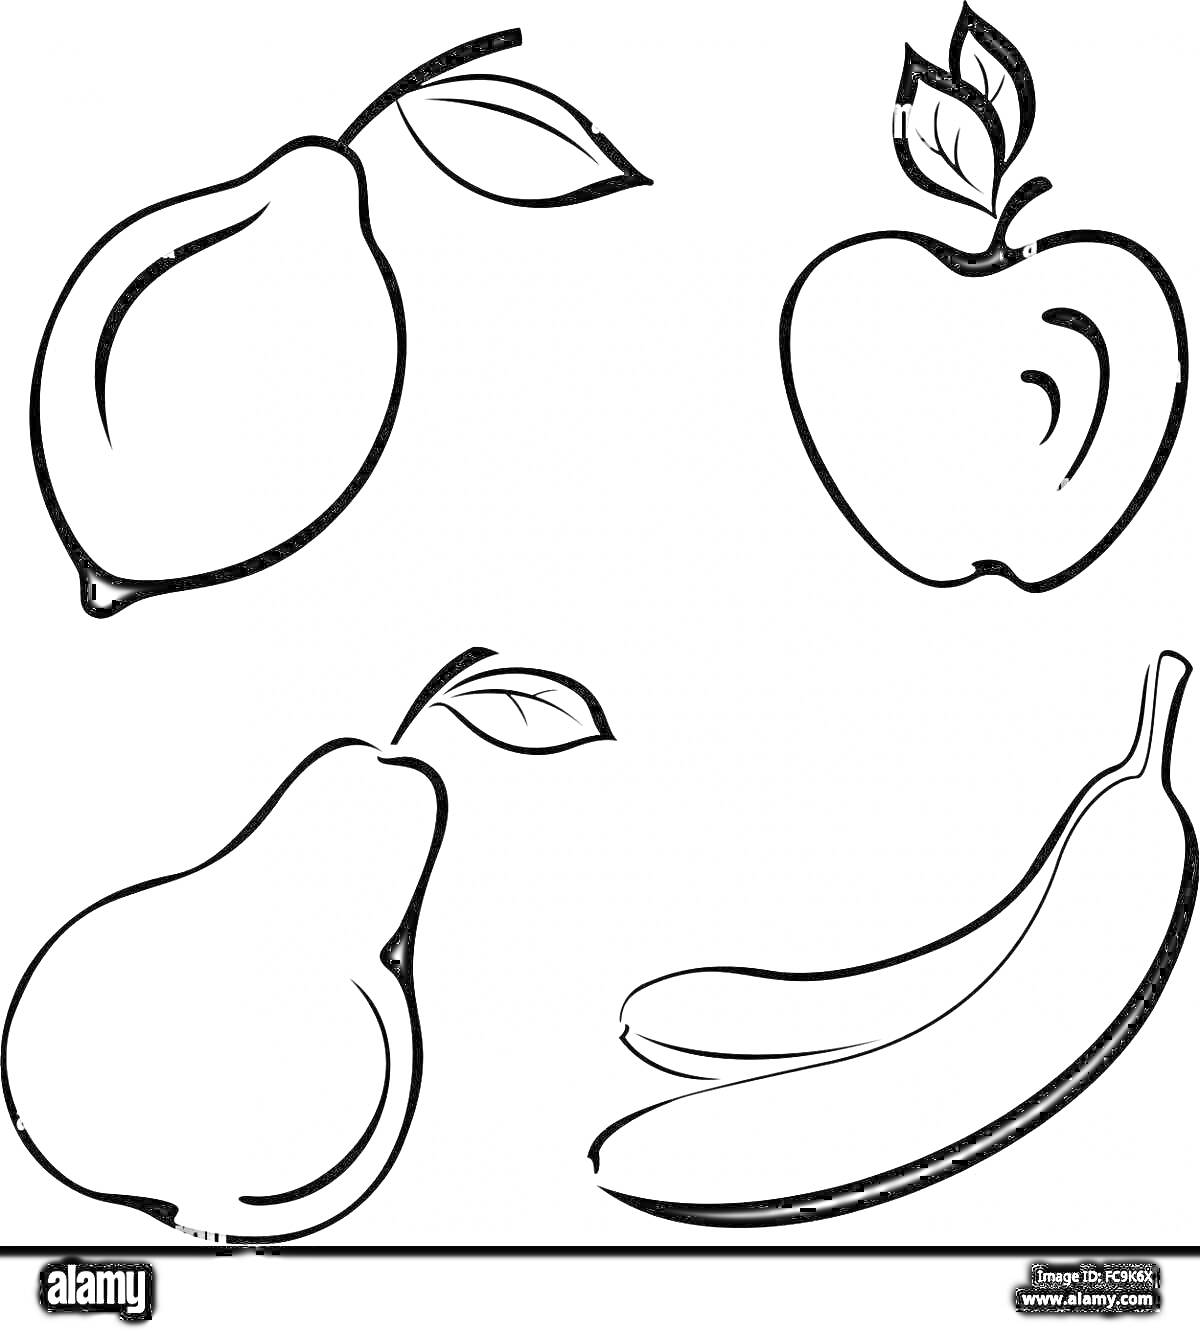 Раскраска Раскраска с грушей, яблоком и двумя бананами